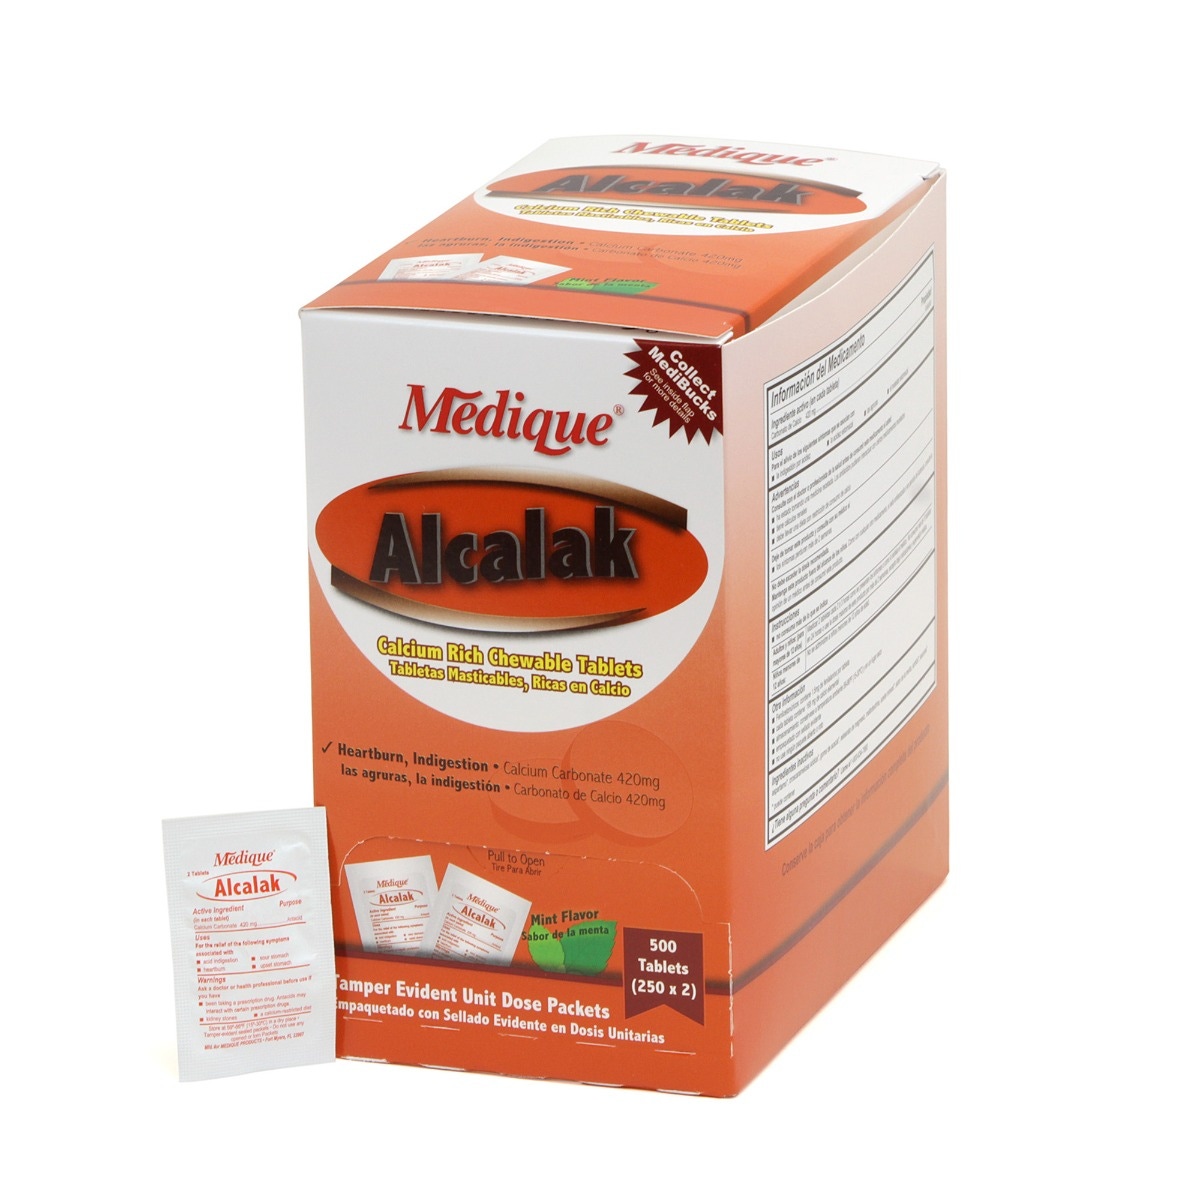 Medique Alcalak Antacid